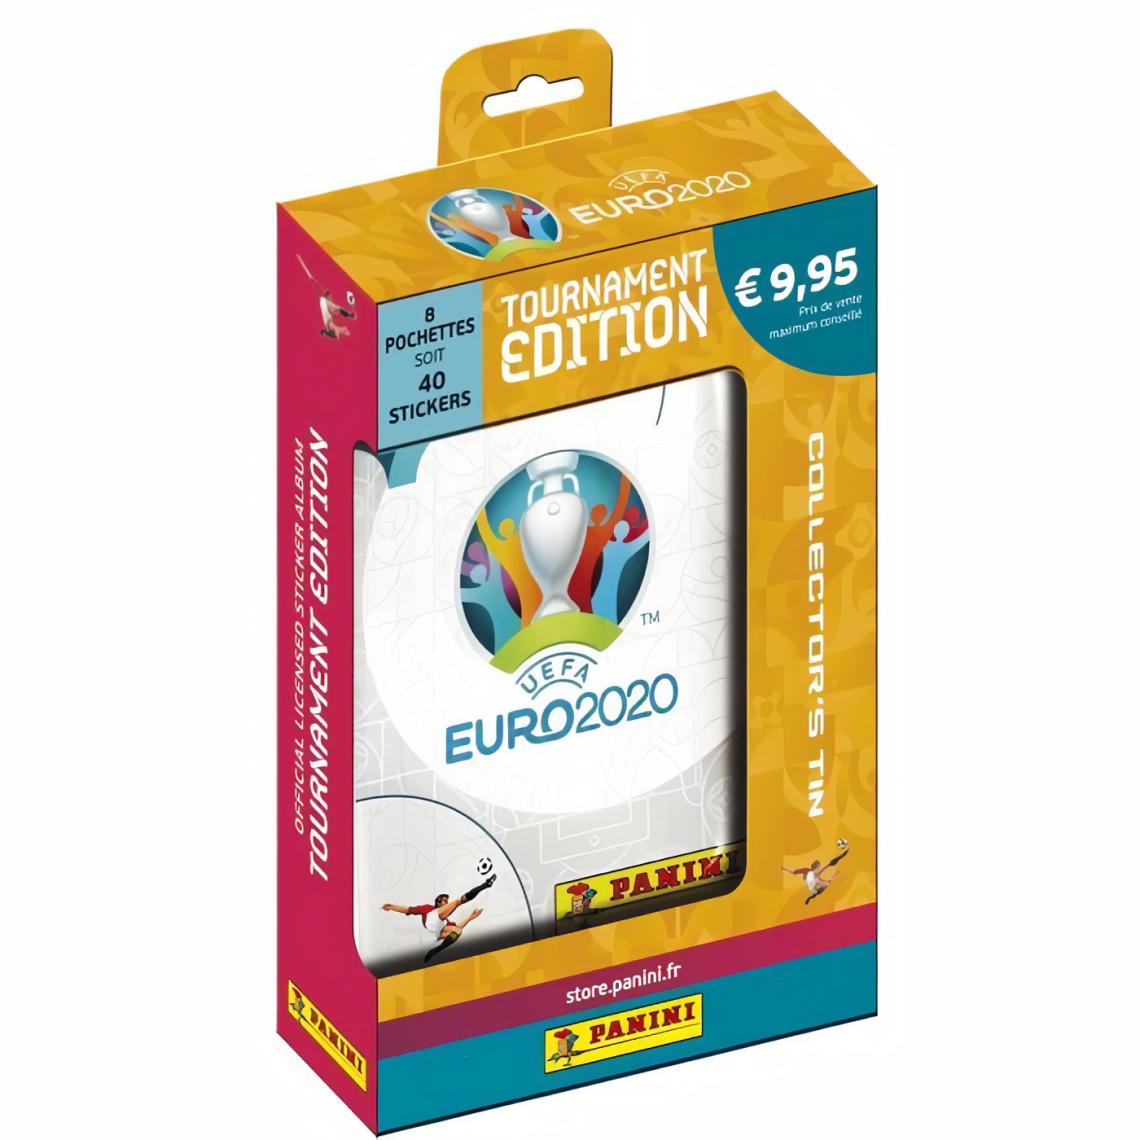 Panini - UEFA EURO 2020 Stickers 2021 Tournament Edition - Boîte métal de 8 pochettes - Carte à collectionner